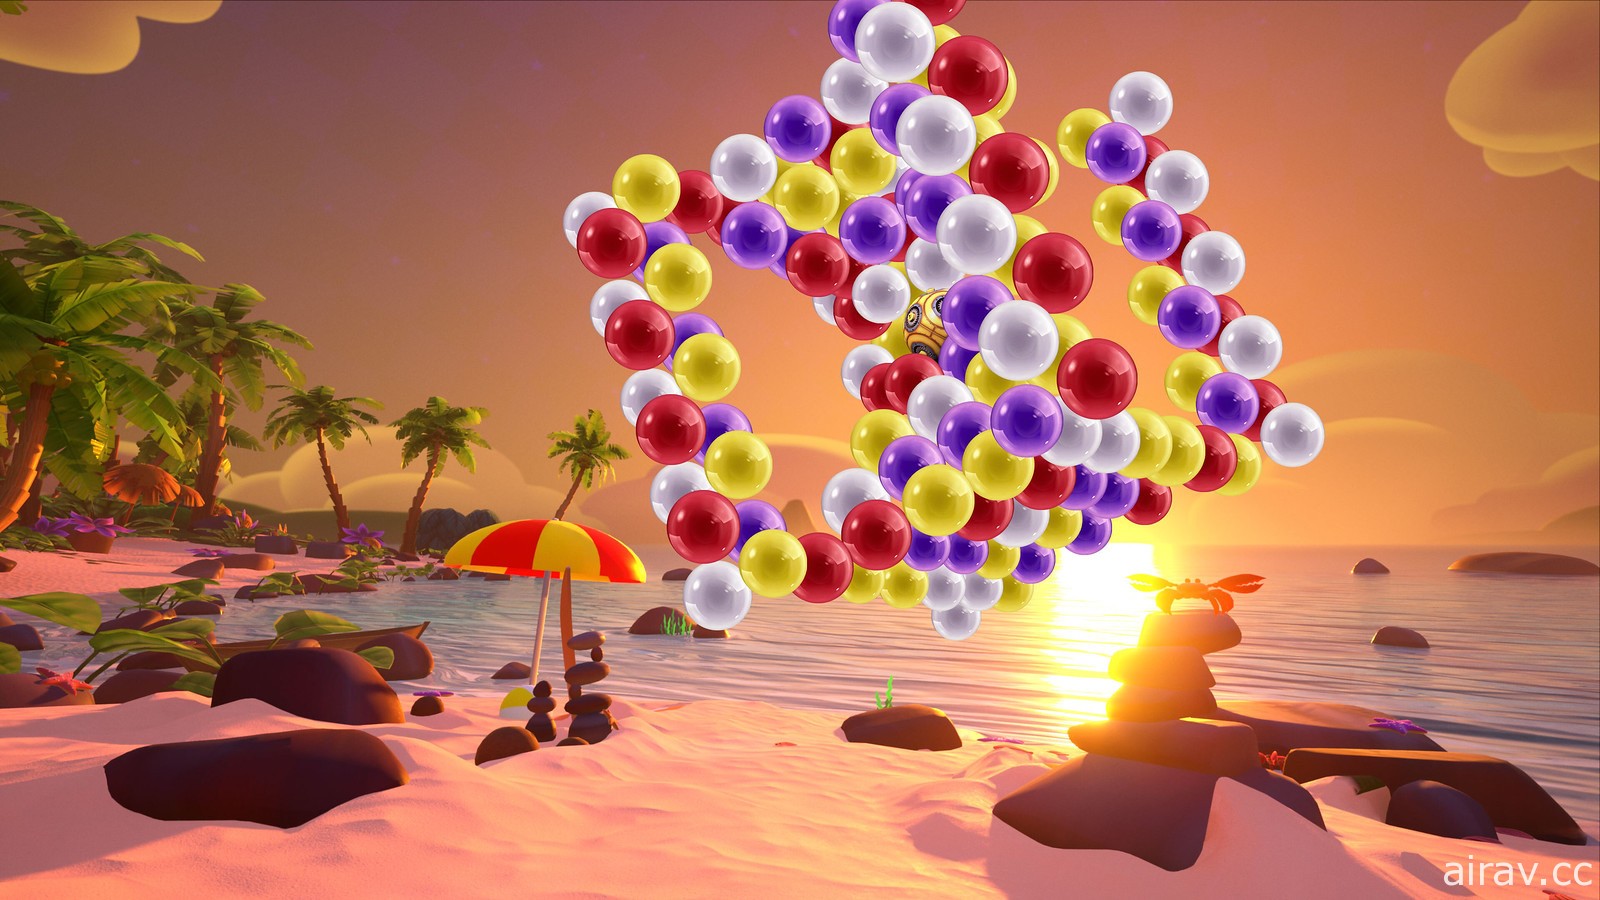 《泡泡龍 3D：假期傳說》經典益智遊戲 3D VR 化登陸 PS VR、PS4、PS5 平台